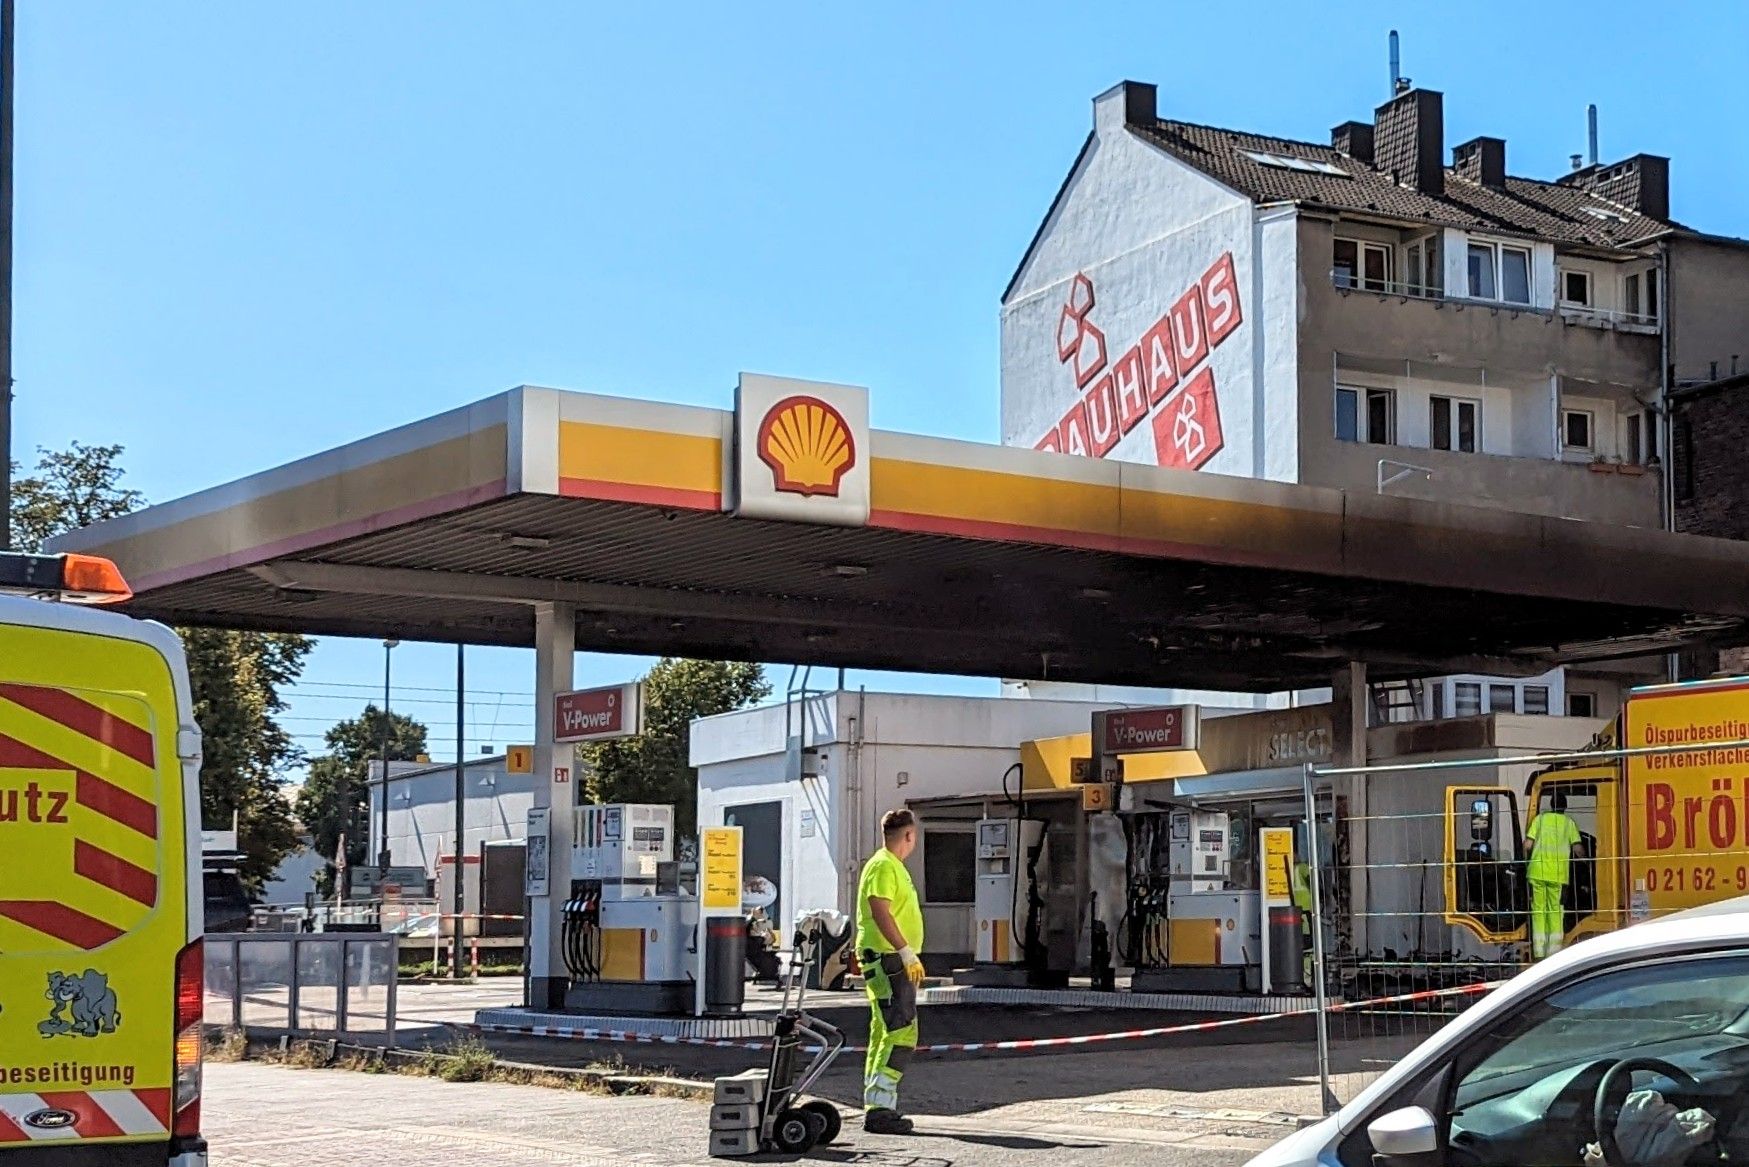 Tankstelle, Ronsdorferstr., Lierenfeld / Foto Stefan Scholz